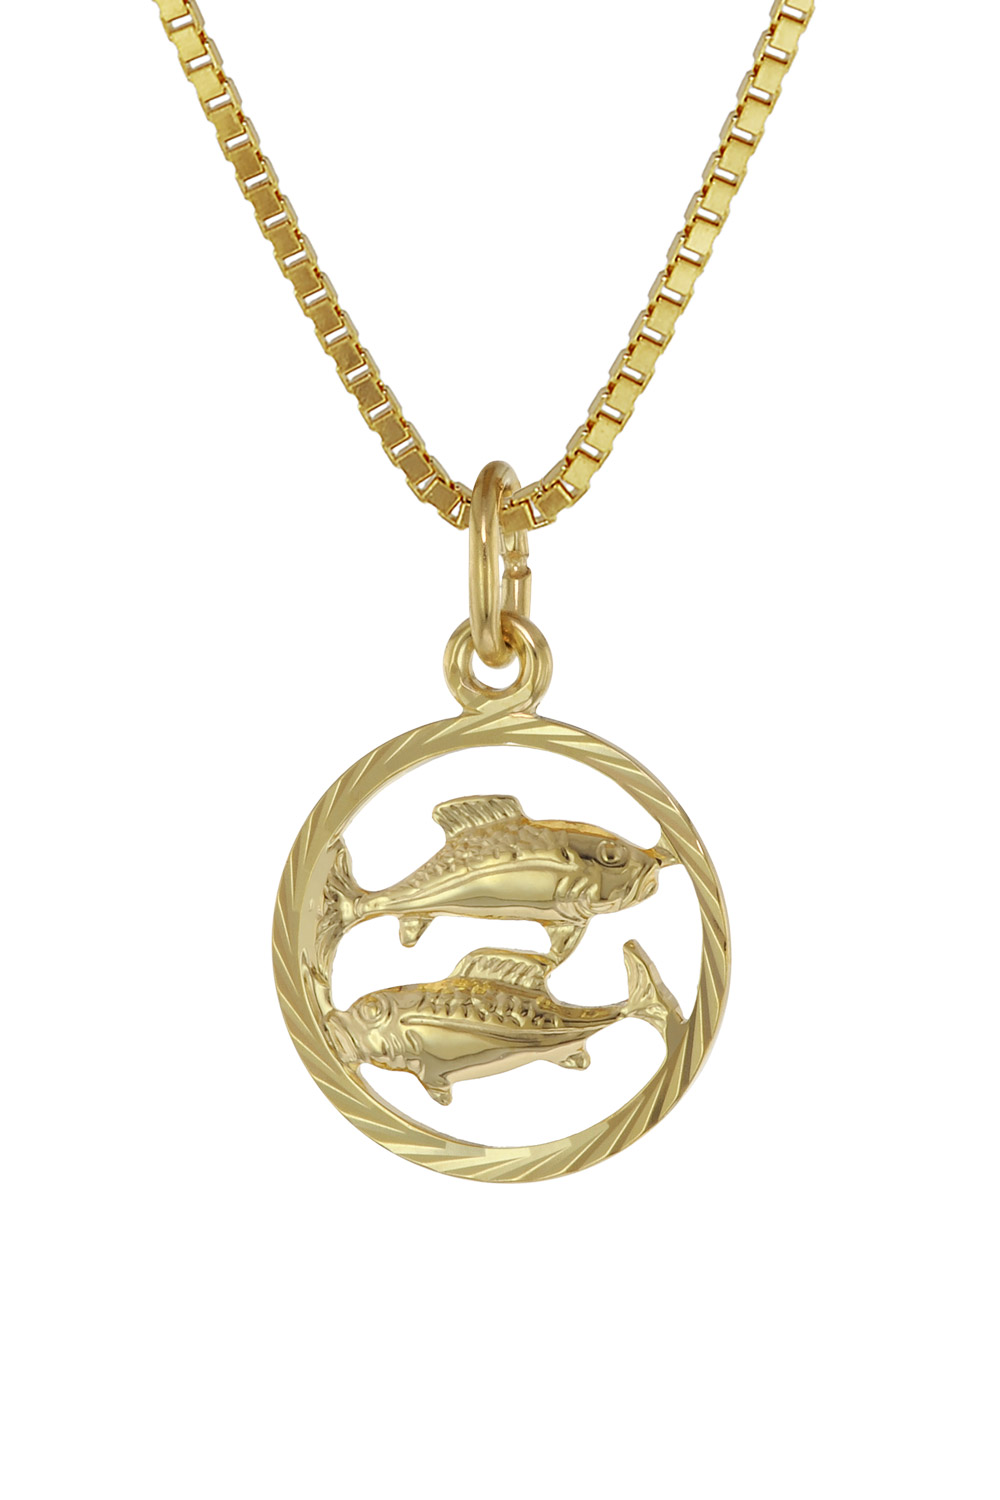 Goldkette 333 mit Anhänger Sternzeichen Fische Versand kostenlos Mode & Beauty Accessoires & Schmuck 